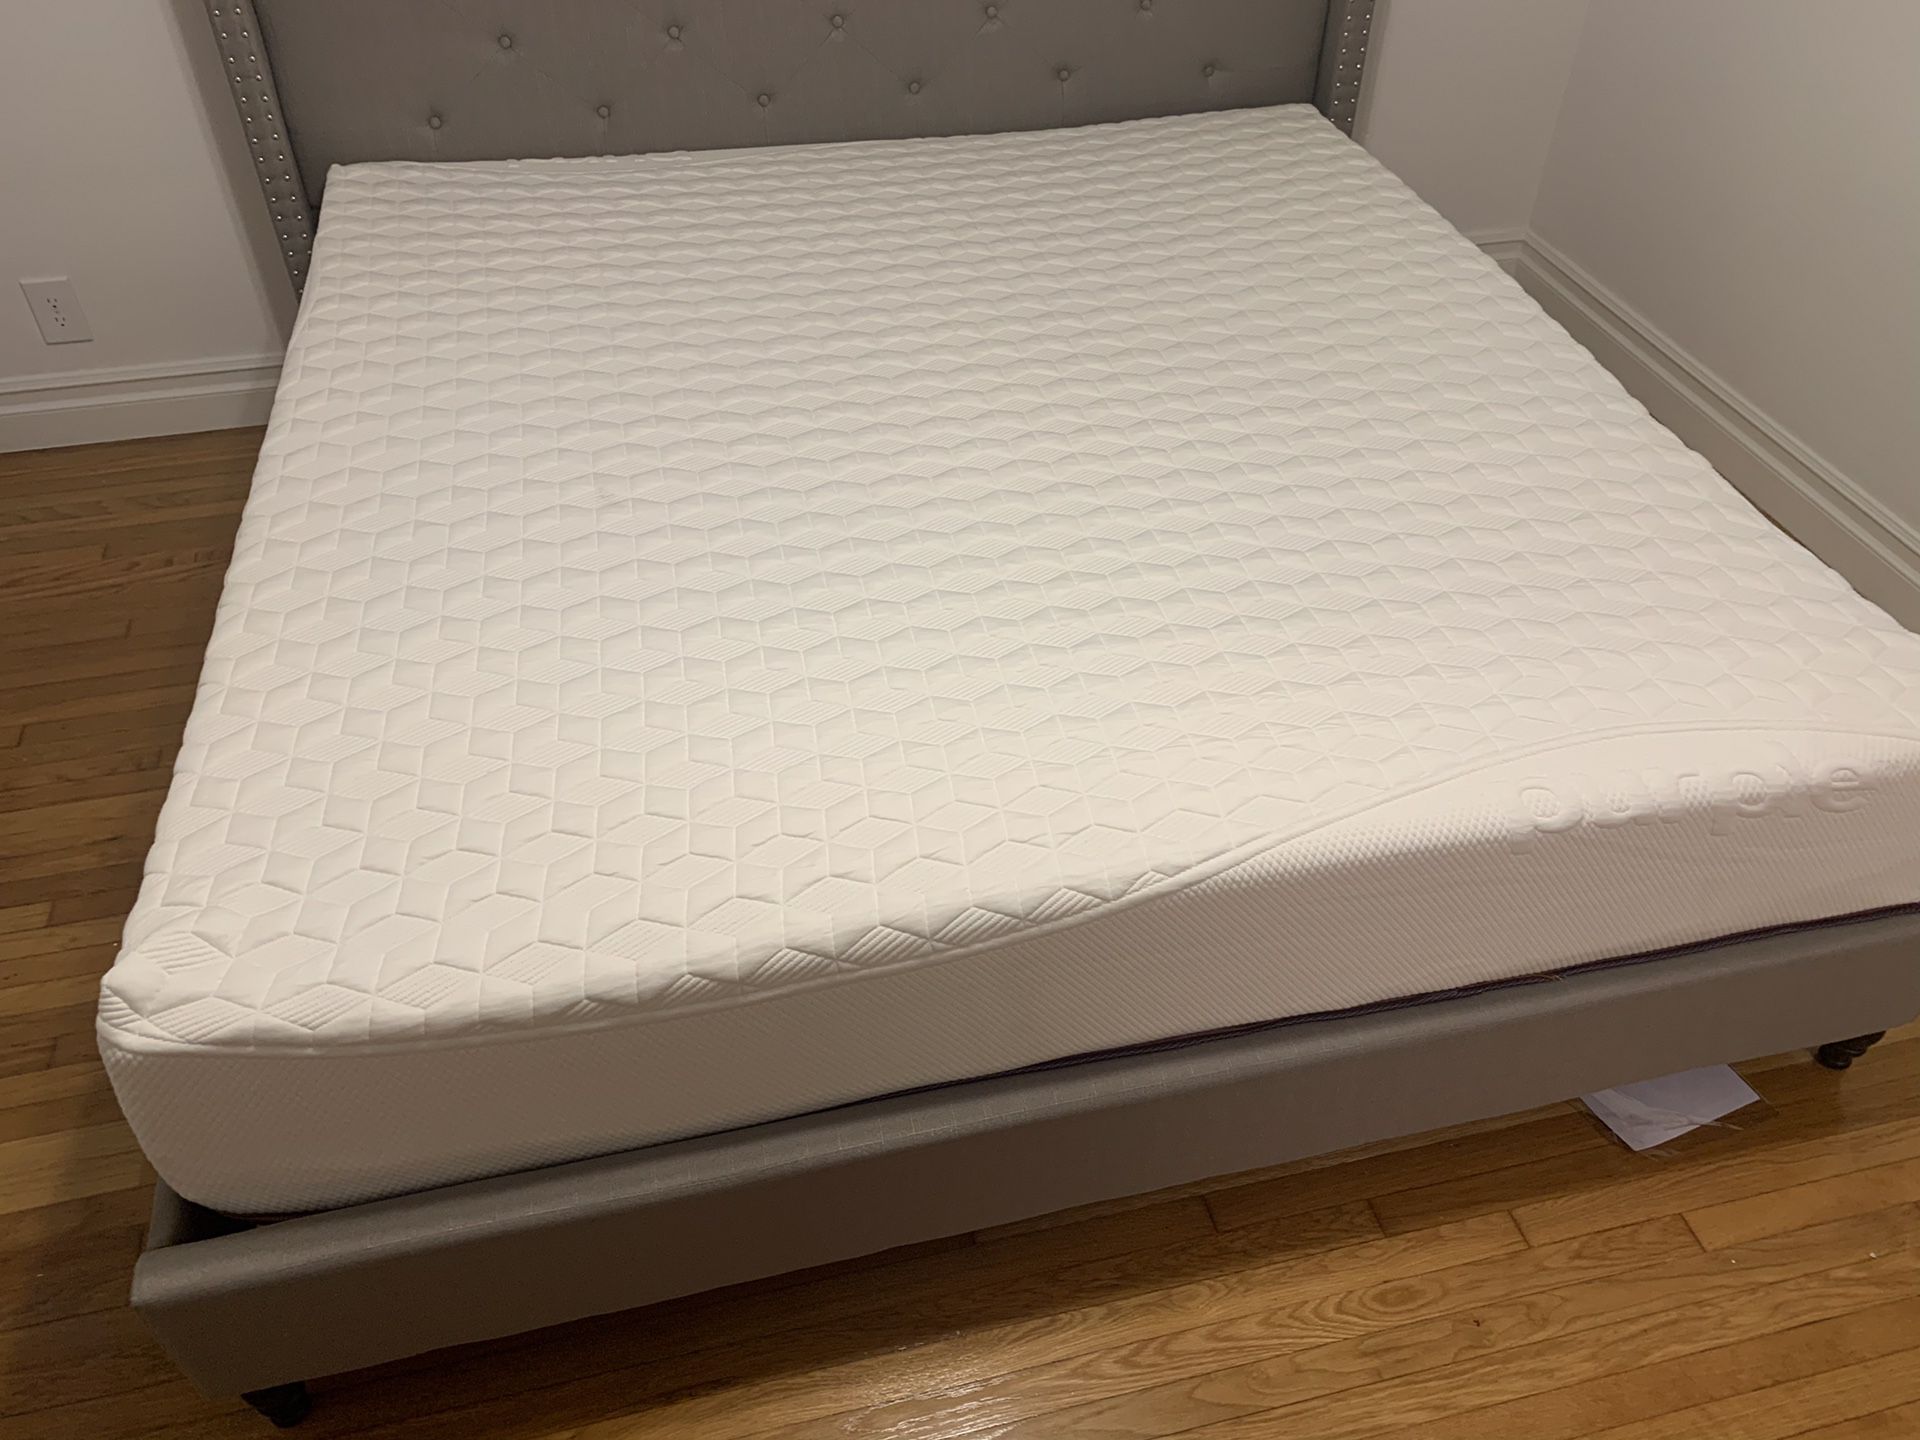 12 inch full size memory foam mattress